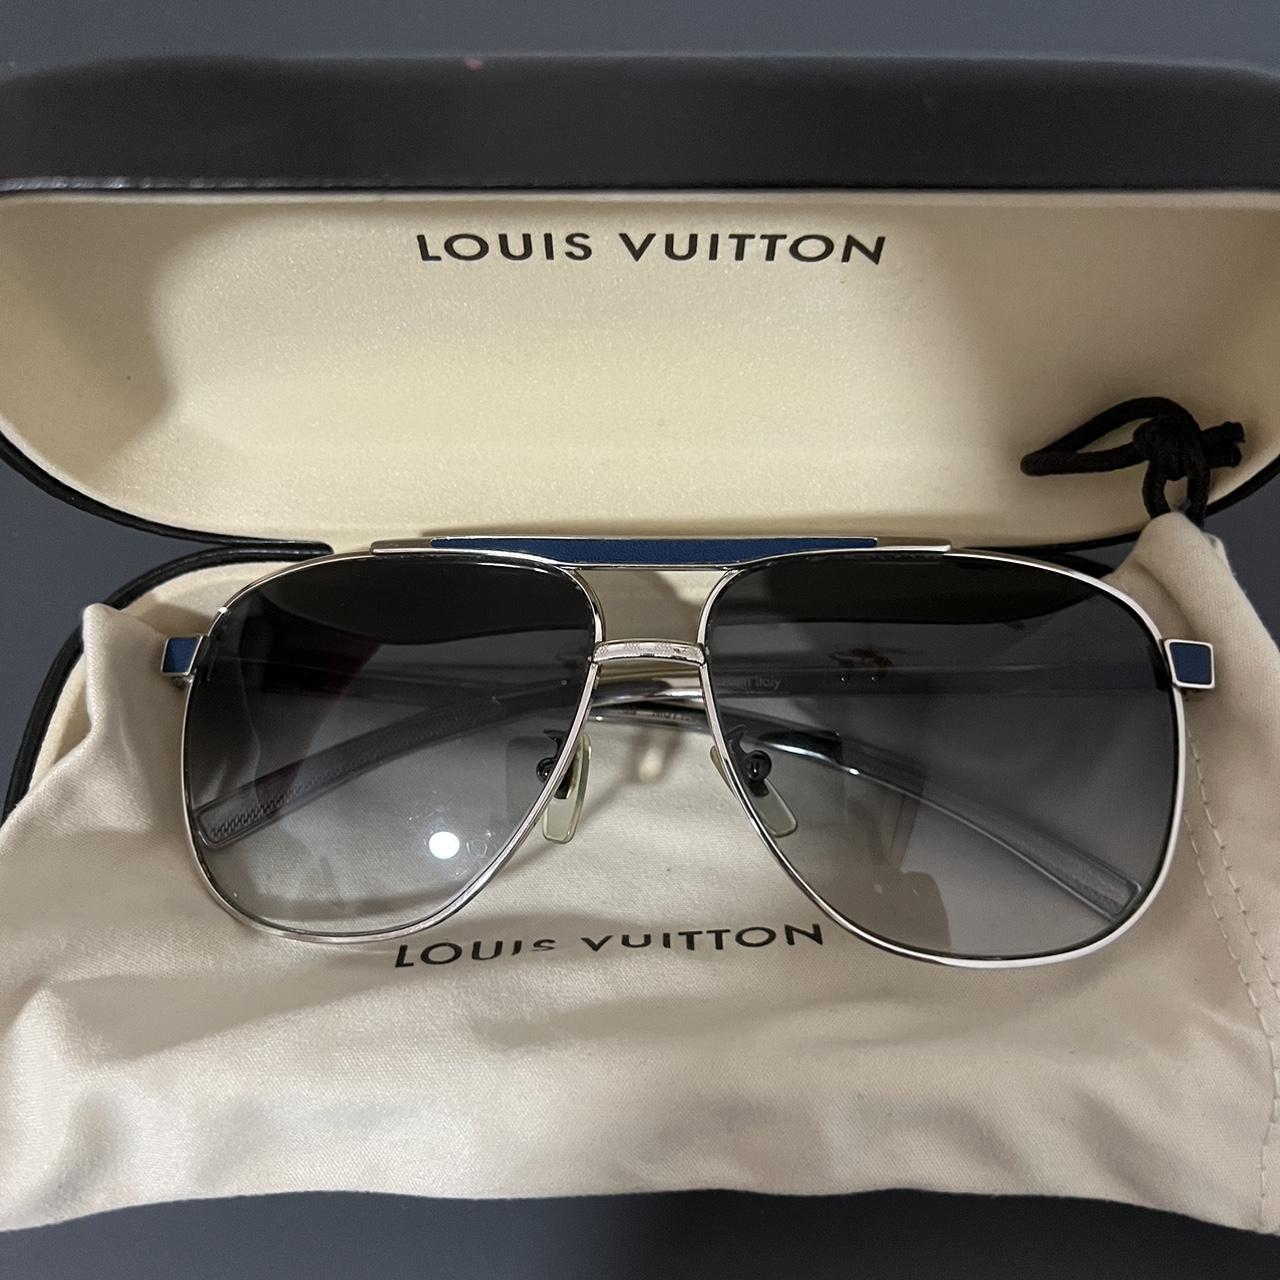 Louis Vuitton 2012 Attitude Pilote Sunglasses - Silver Sunglasses